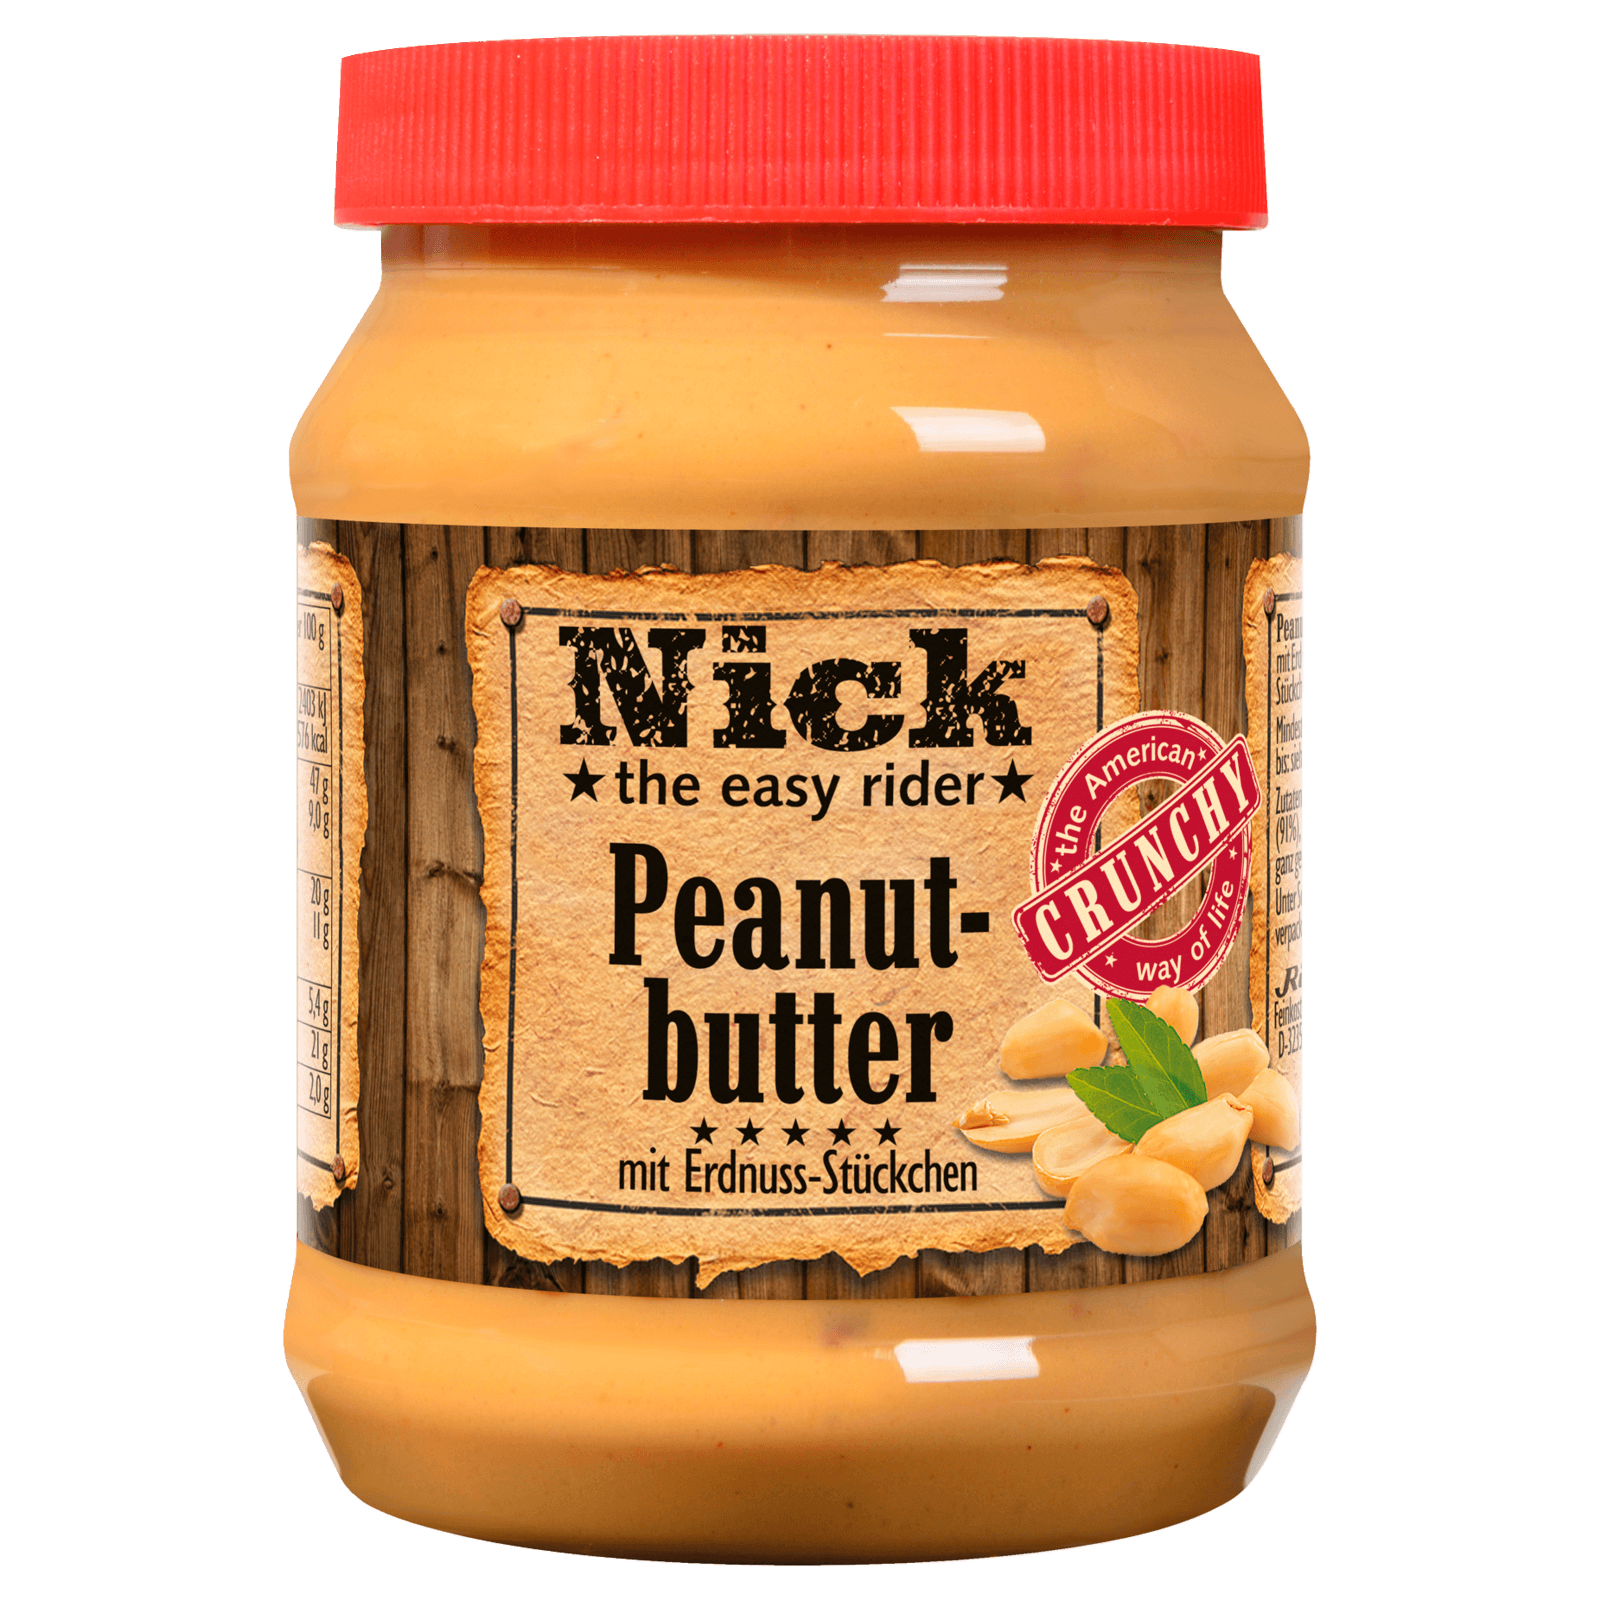 Nick Peanut-butter mit Erdnuss-Stückchen 350g bei REWE online bestellen!